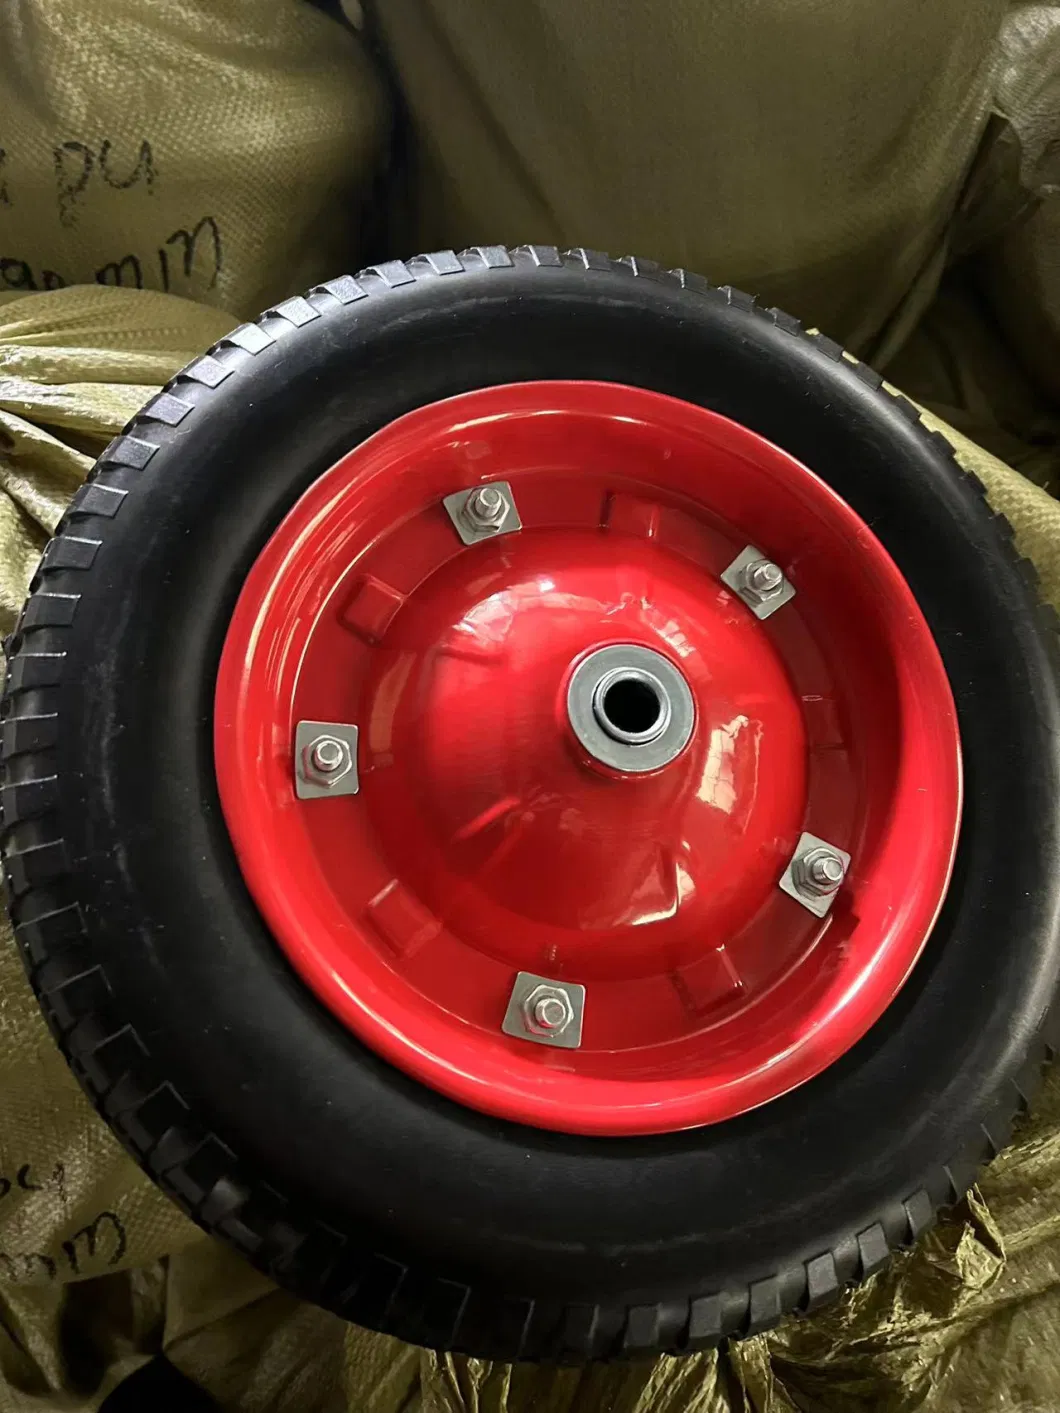 16 Inch 4.00-8 Wheelbarrow Tyre Pneumatic Wheel Rubber Wheel